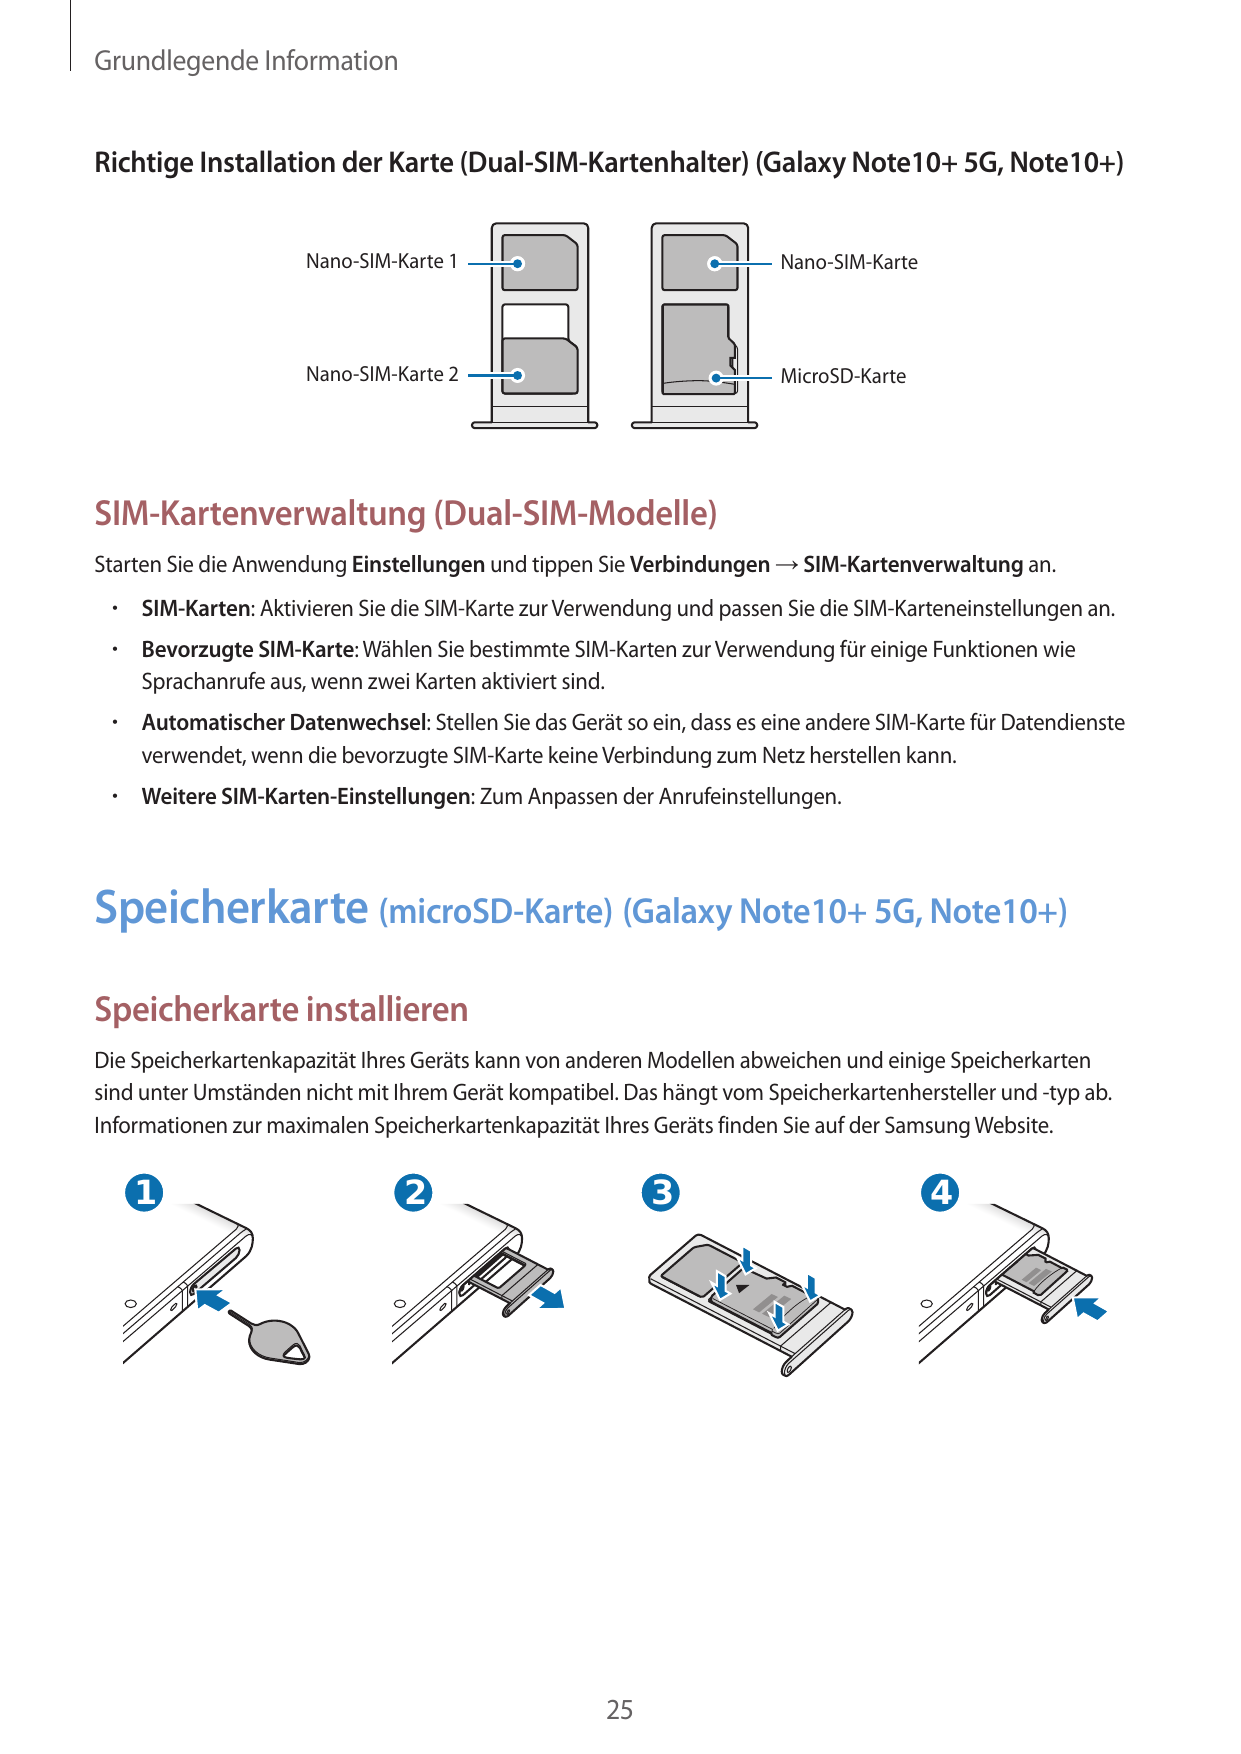 Grundlegende InformationRichtige Installation der Karte (Dual-SIM-Kartenhalter) (Galaxy Note10+ 5G, Note10+)Nano-SIM-Karte 1Nano